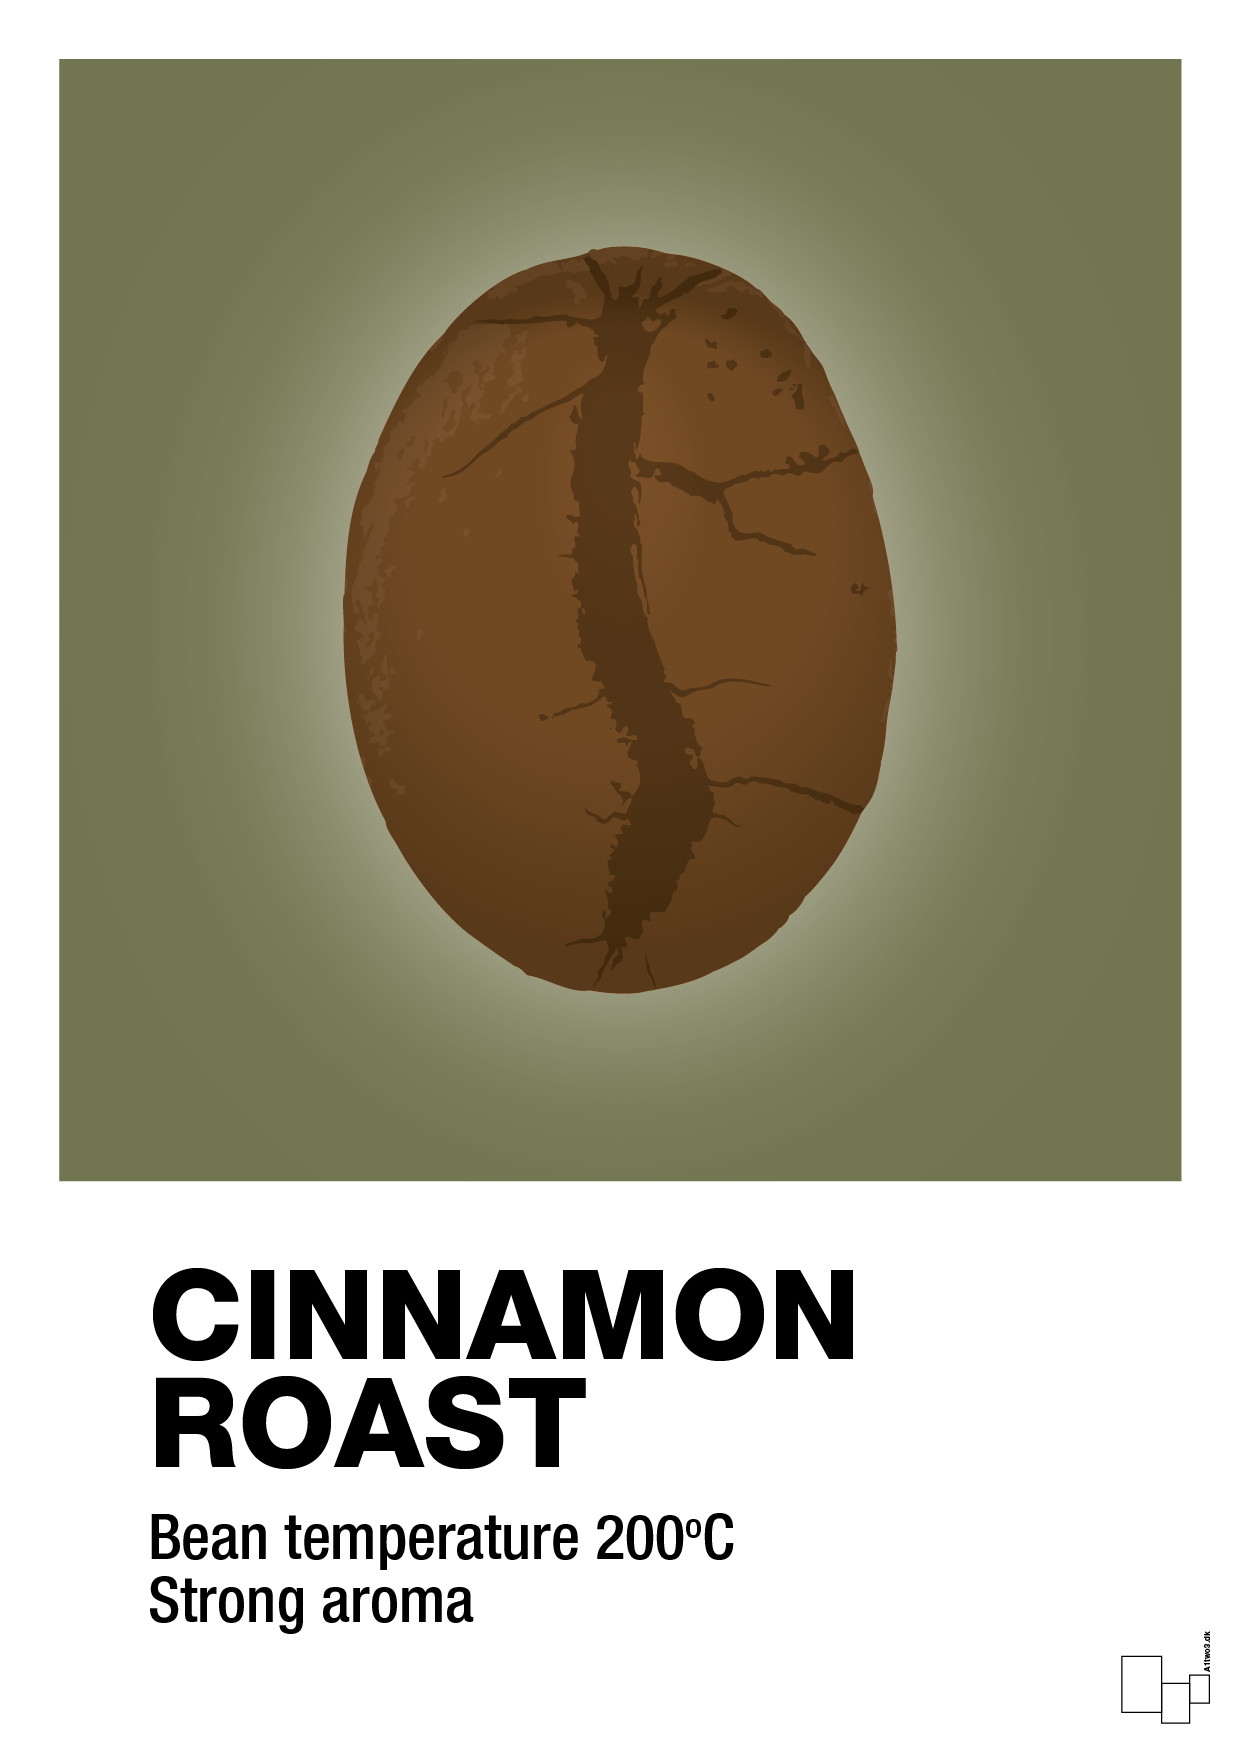 cinnamom roast - Plakat med Mad & Drikke i Secret Meadow